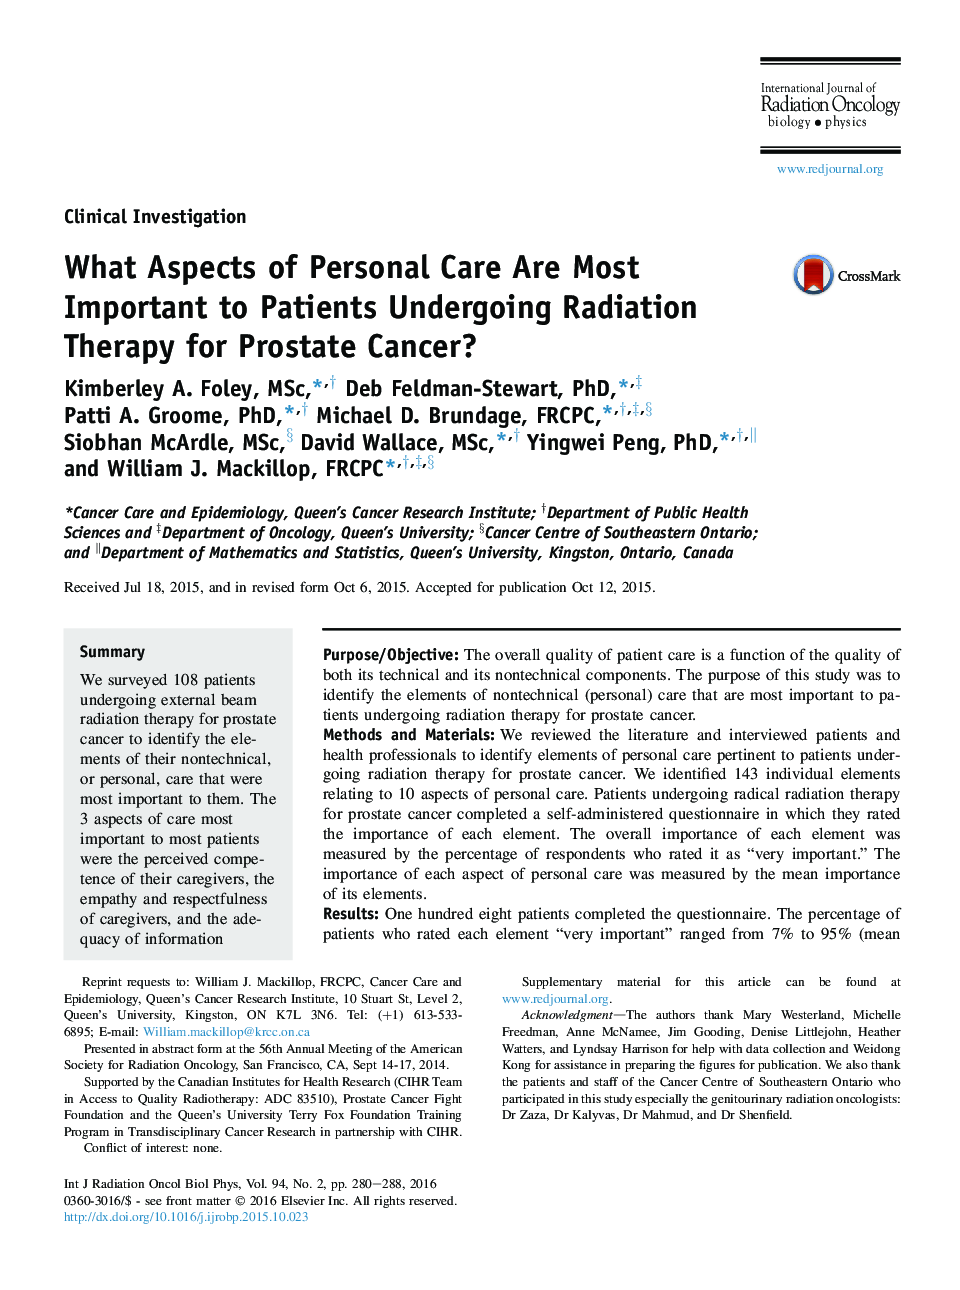 چه جنبه های مراقبت شخصی مهمتر برای بیماران مبتلا به پرتودرمانی برای سرطان پروستات است؟ 